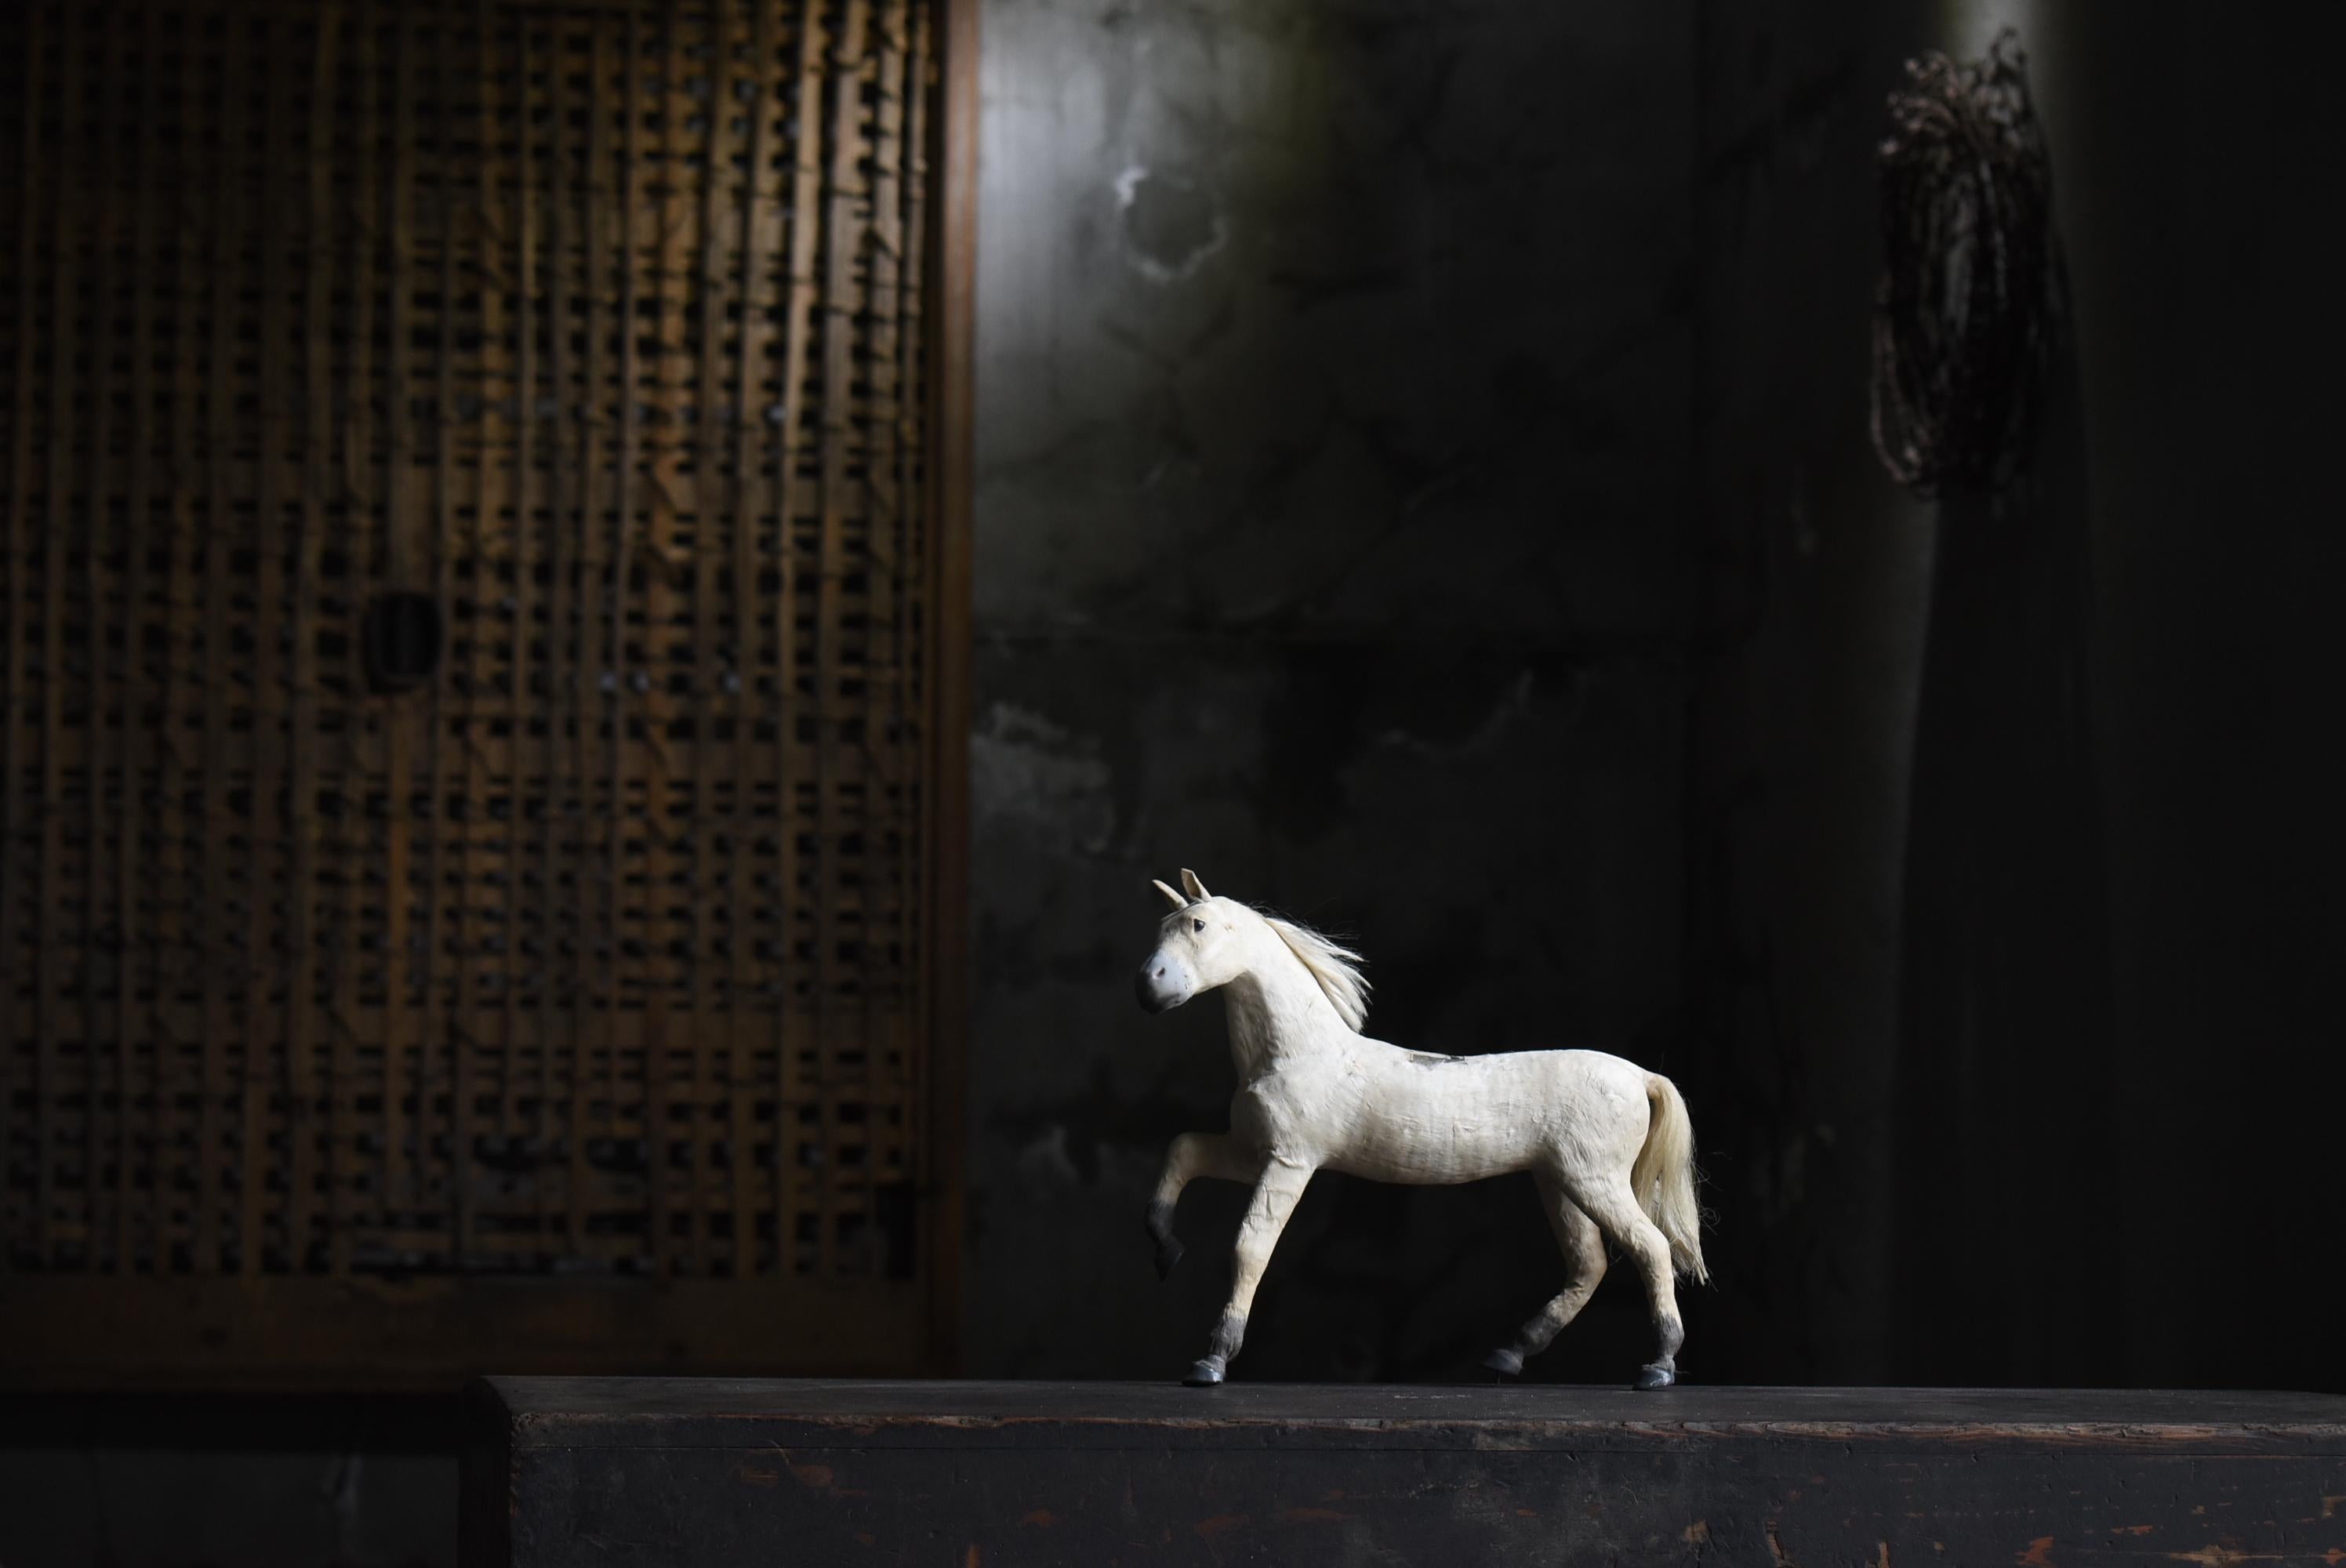 Il s'agit d'une ancienne figurine de cheval japonaise.
Il a été fabriqué au début de la période Showa (années 1920-1940).

Il est principalement constitué de papier. (Des matériaux variés sont utilisés).

Il s'agit d'une création très élaborée.
Vous